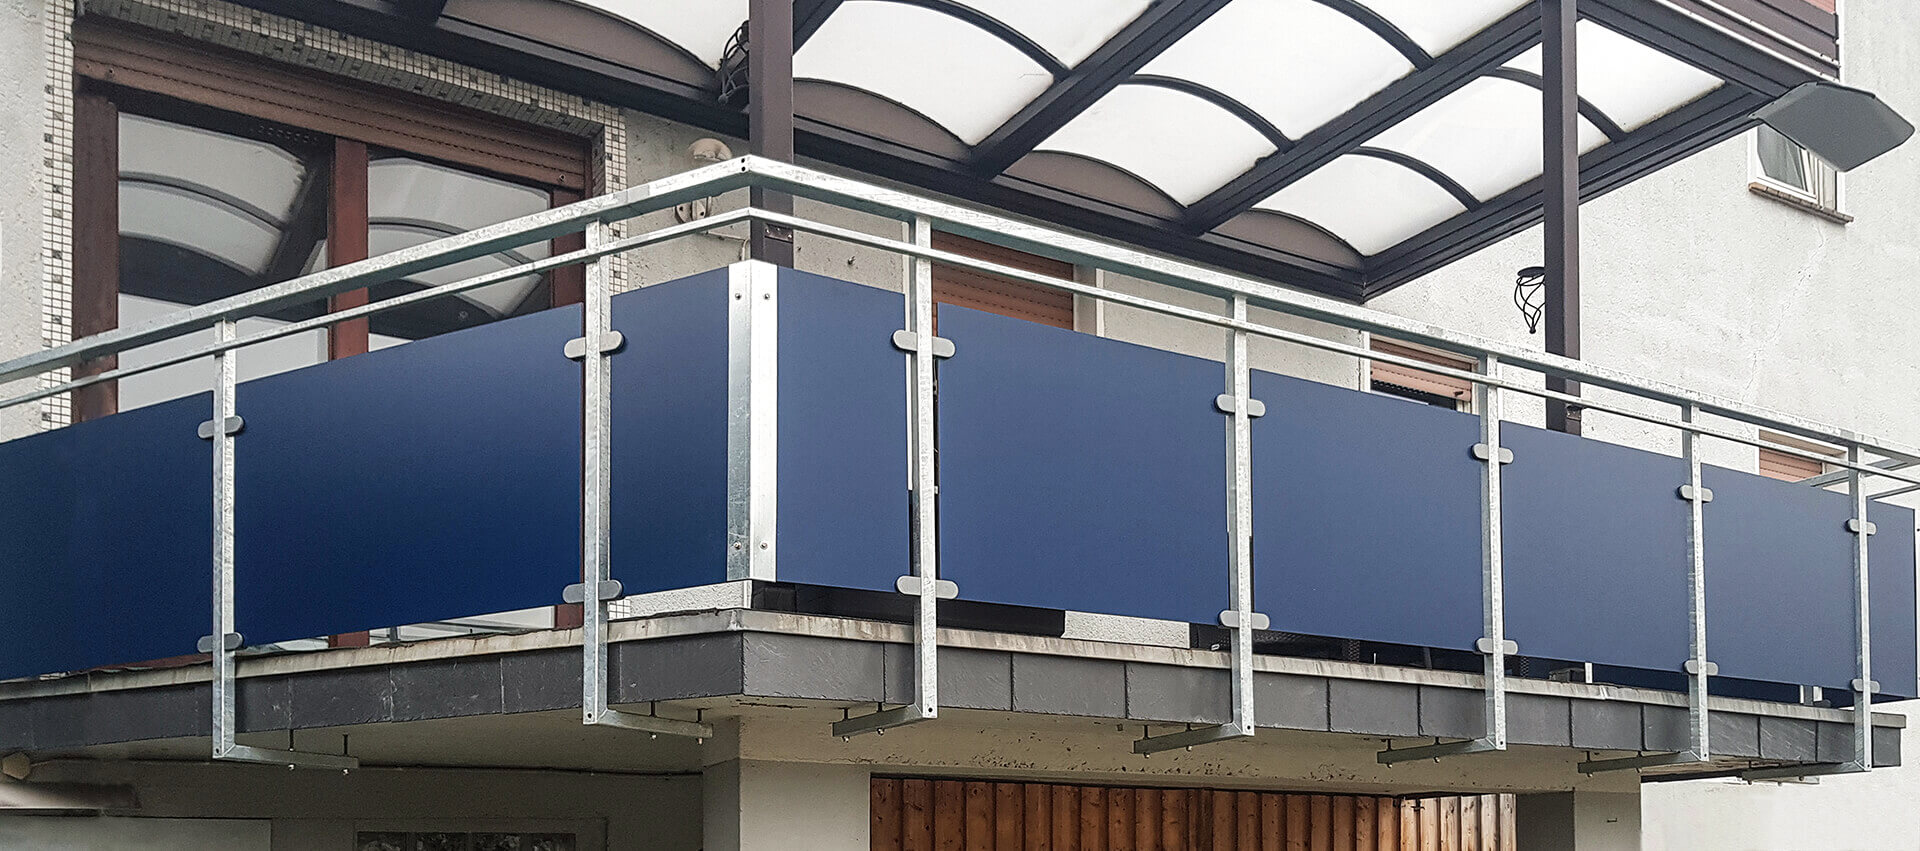 Balkonbau für MFH in Bottrop: Planung, Fertigung und Montage von der Edelstahlschlosserei Nappenfeld aus Mühlheim